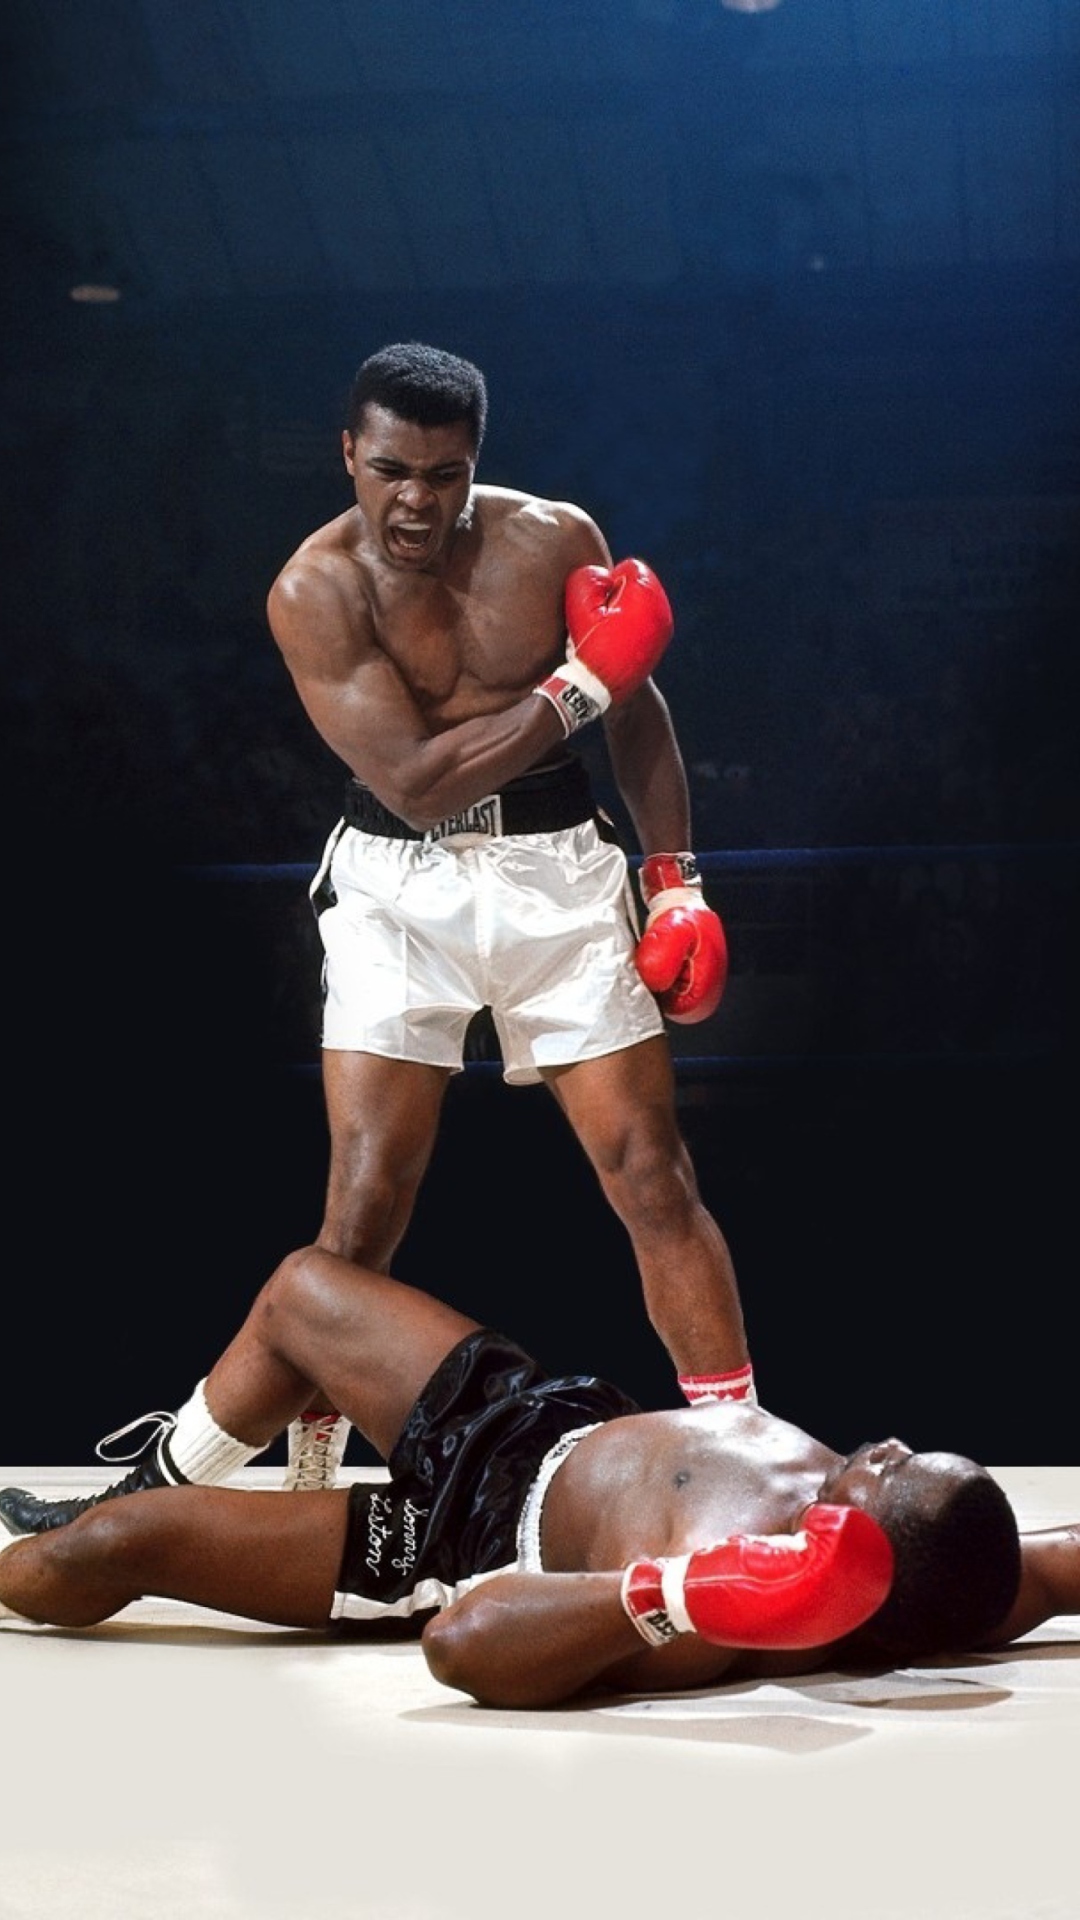 Das Mohammed Ali Legendary Boxer Wallpaper 1080x1920